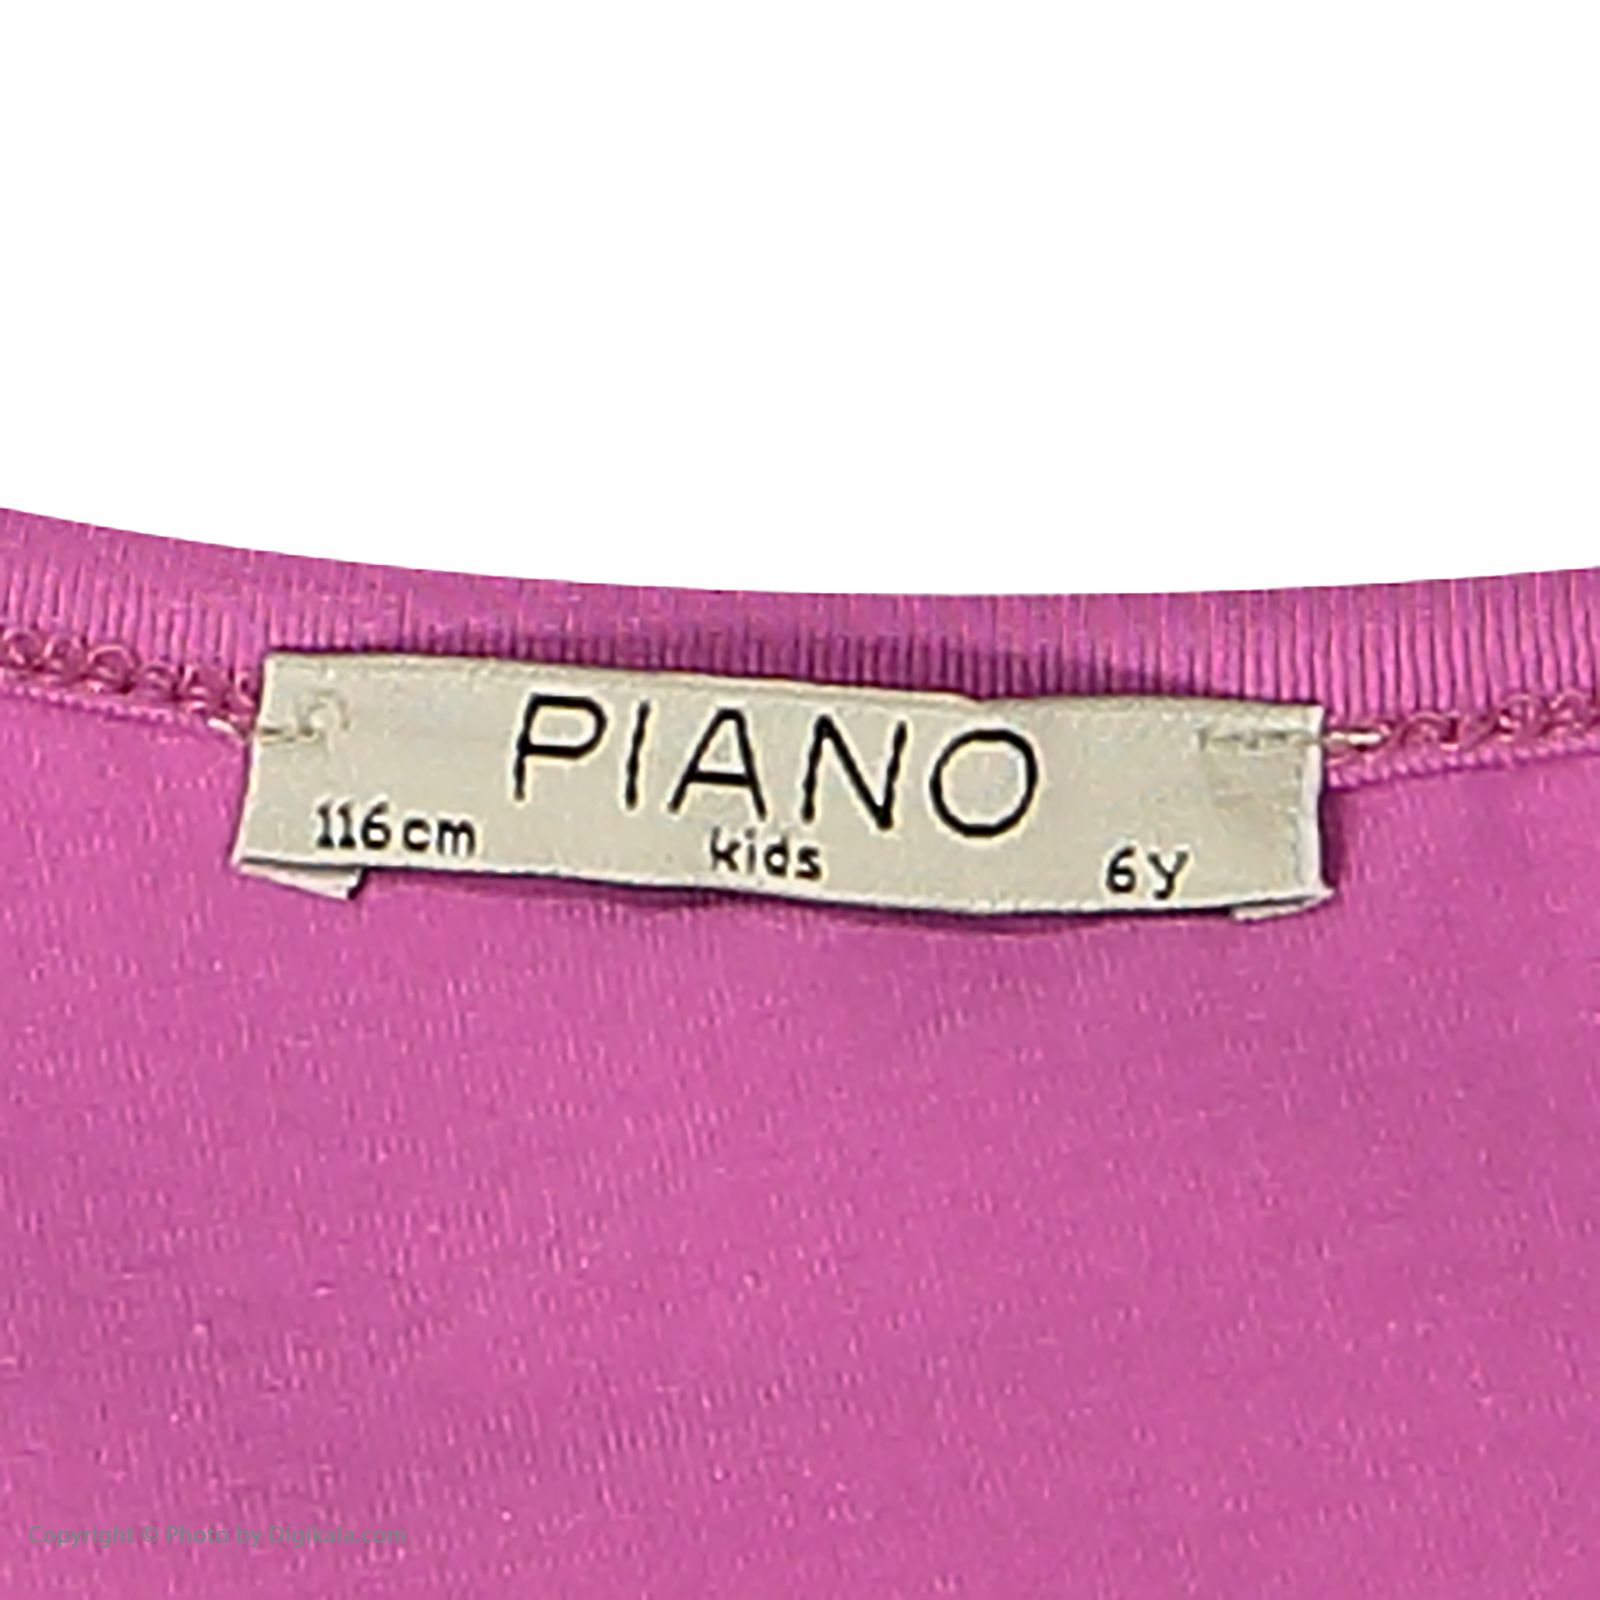 تی شرت دخترانه پیانو مدل 1423-66 -  - 4